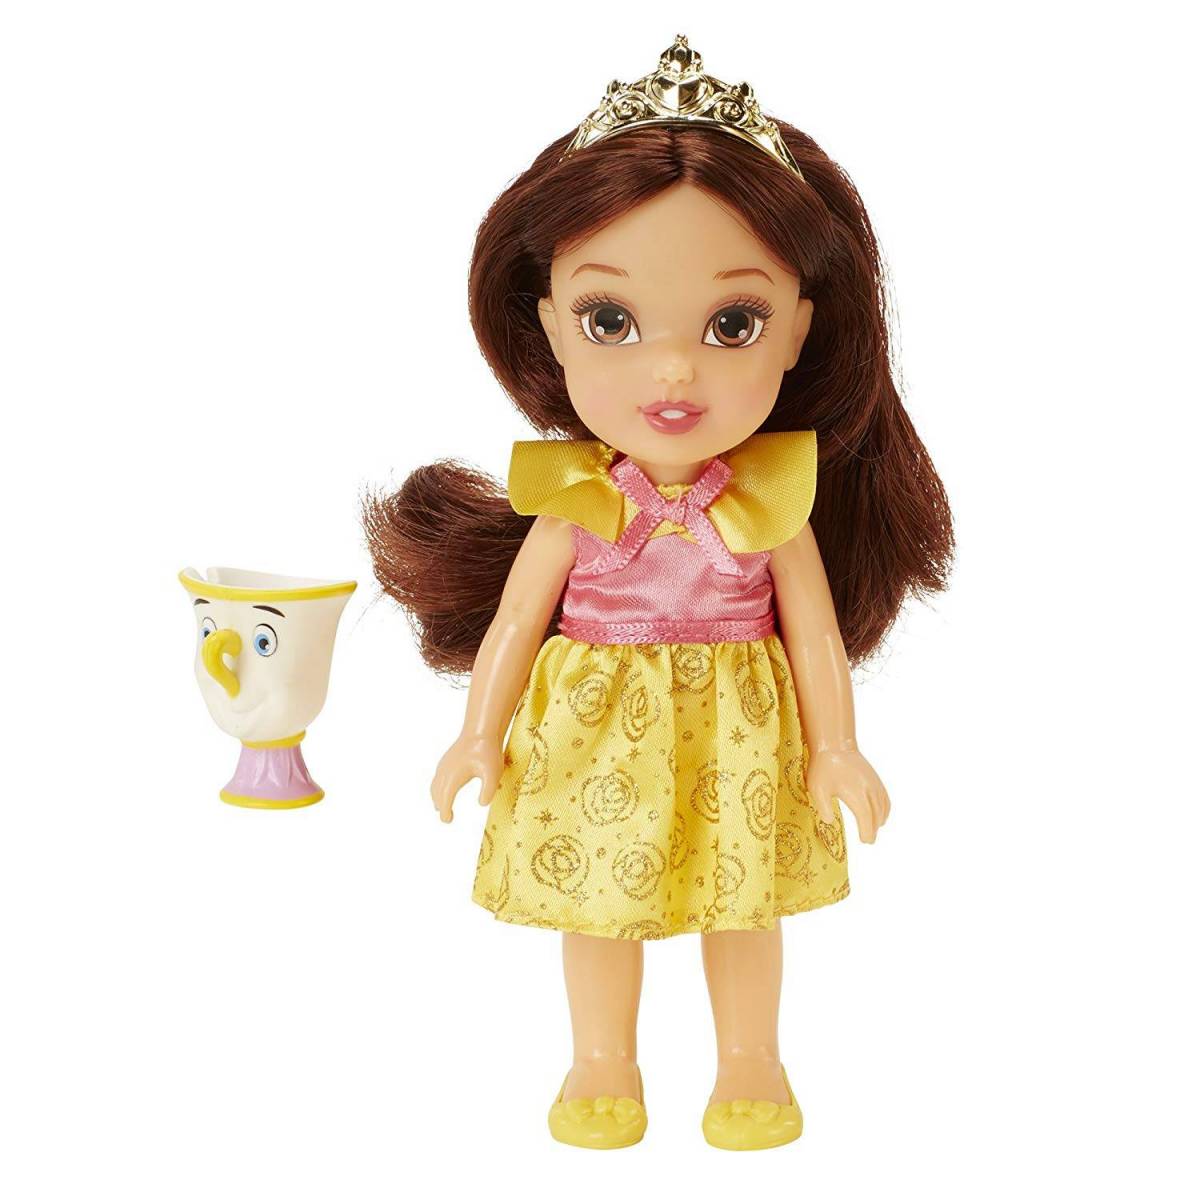 Petite Poupée Belle et Zip Princesse Disney - 15 cm